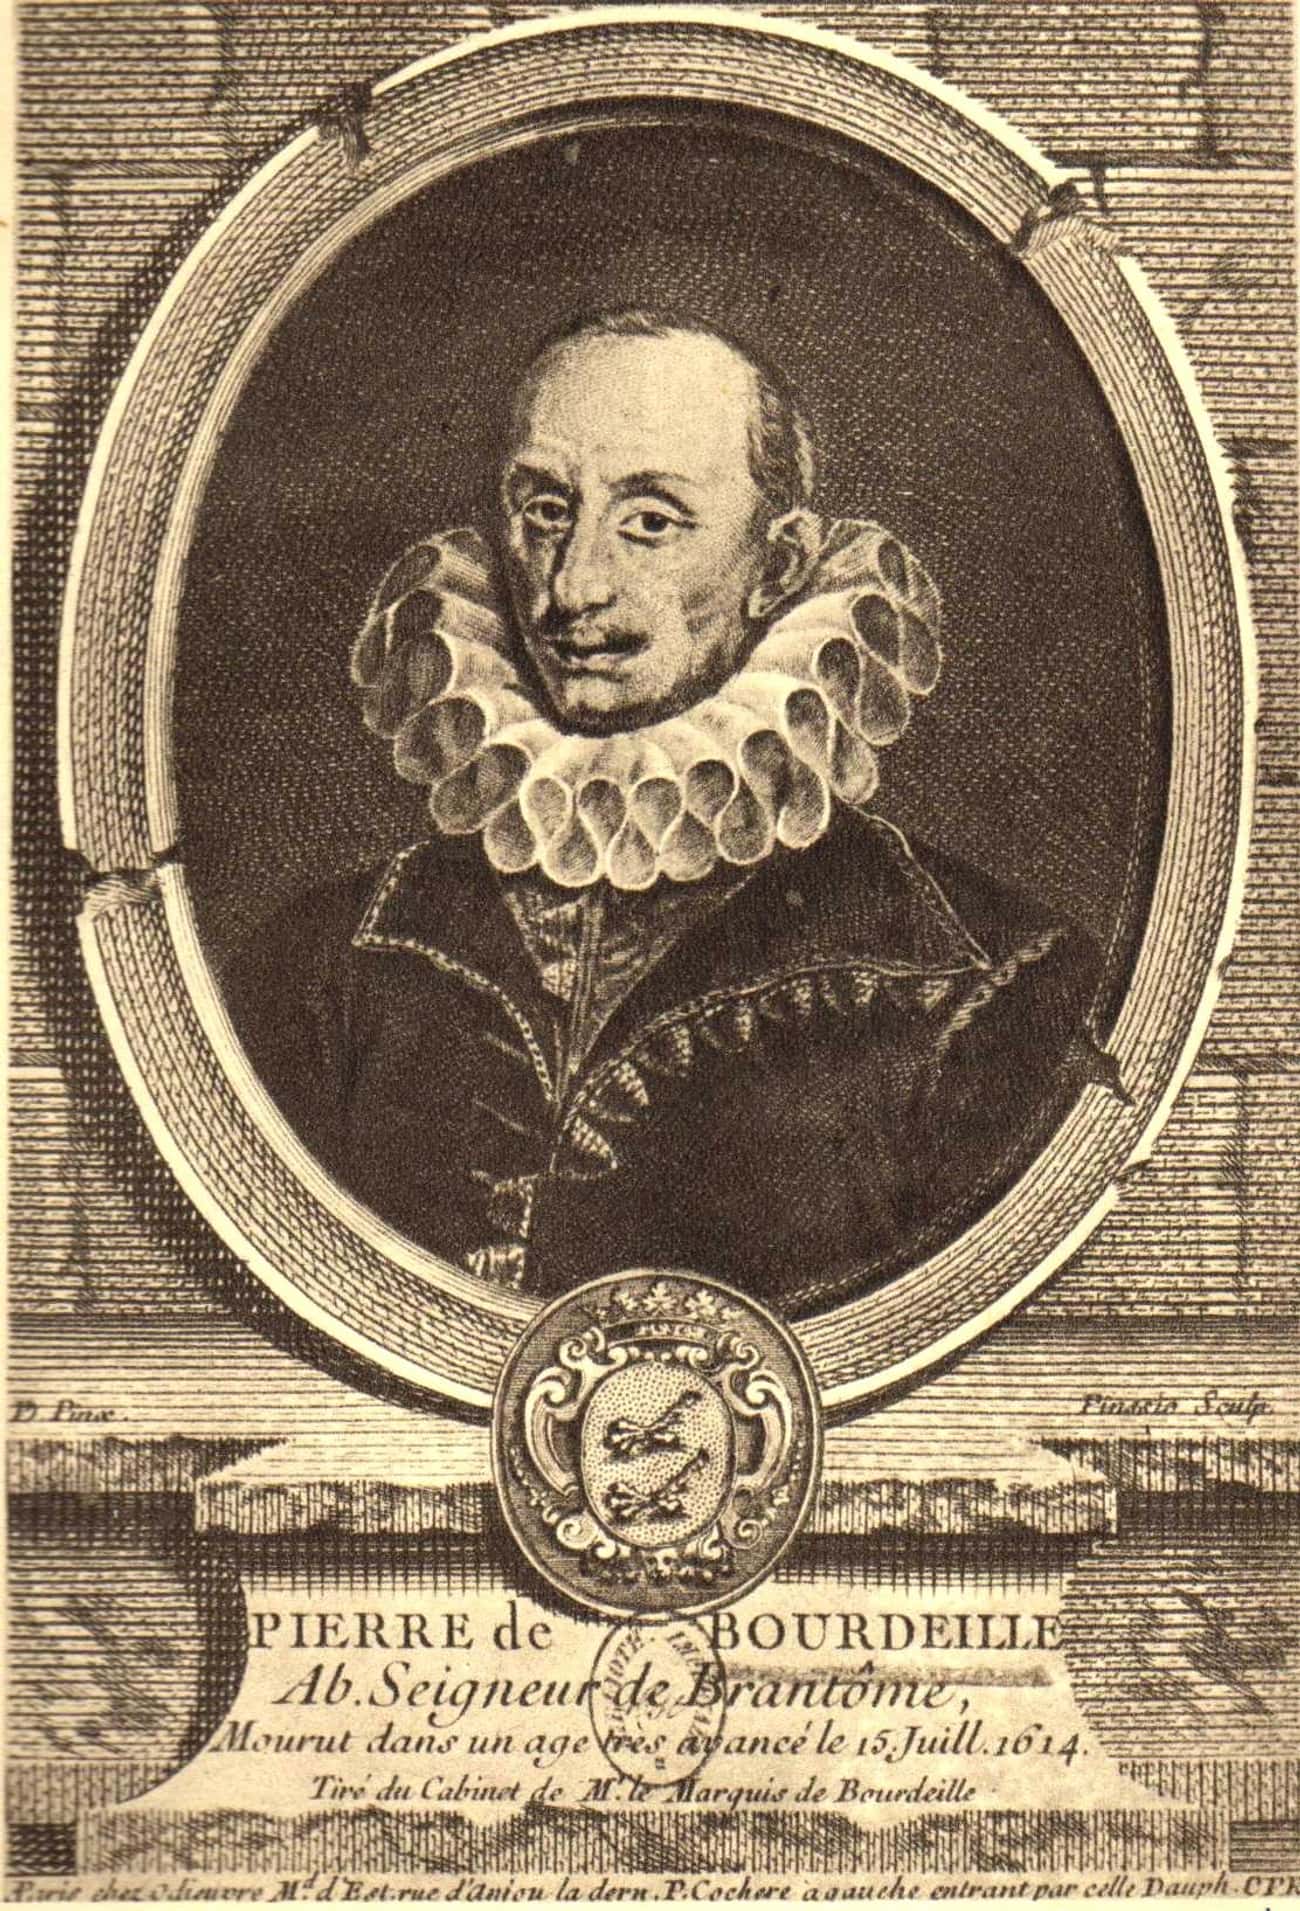 Pierre de Bourdeille, seigneur de Brantôme